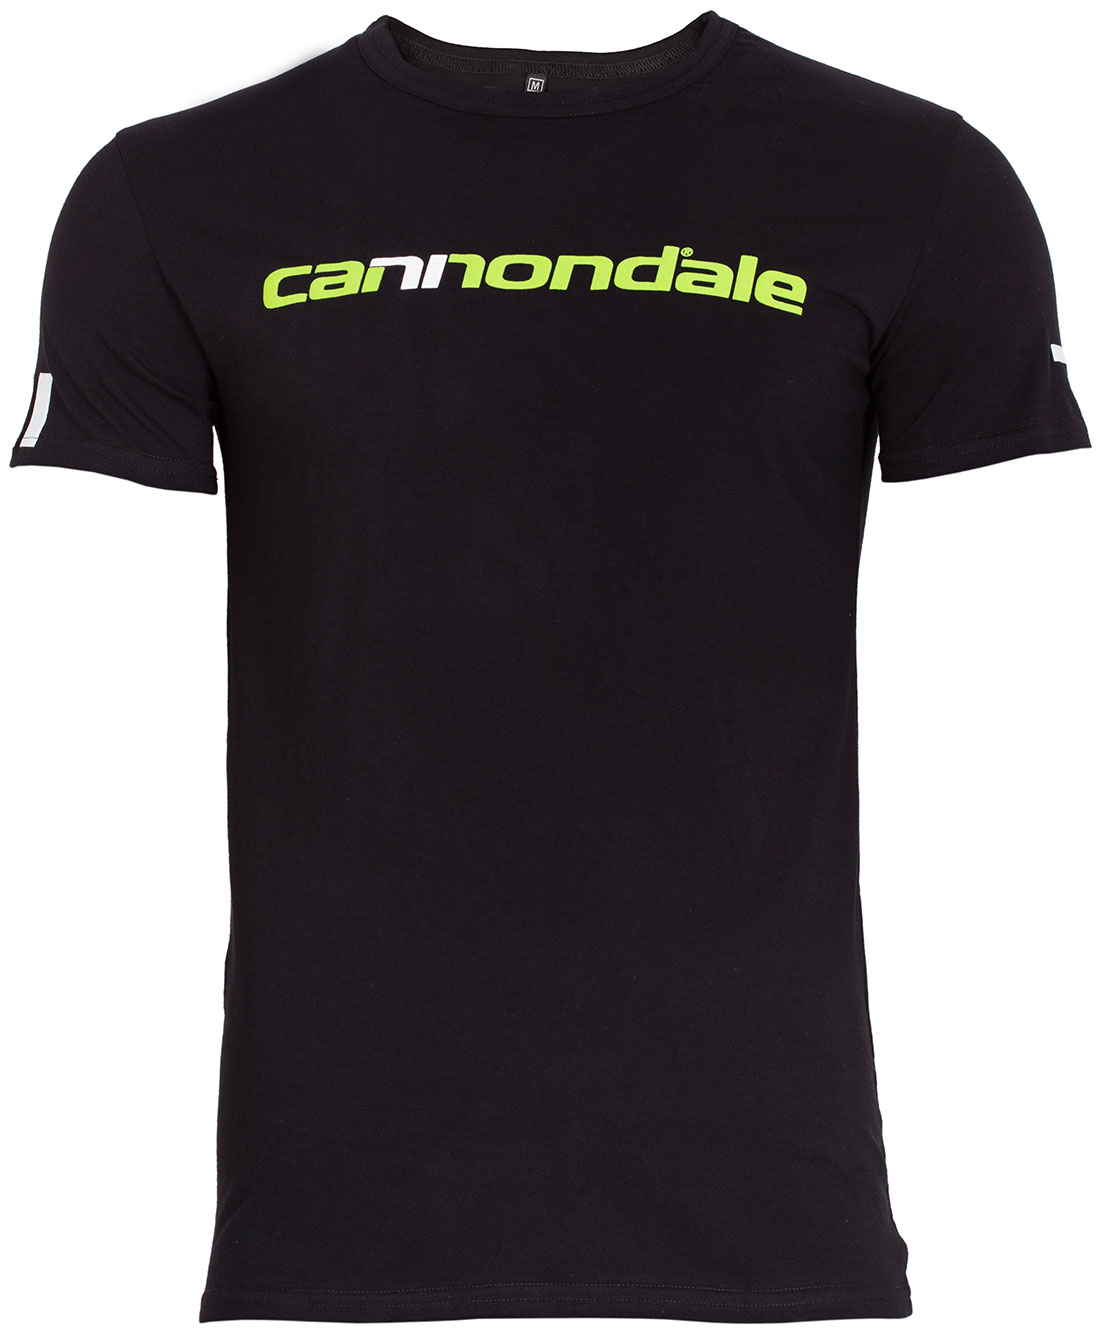 Футболка Cannondale с горизонтальным двухцветным логотипом, черная, размер L фото 